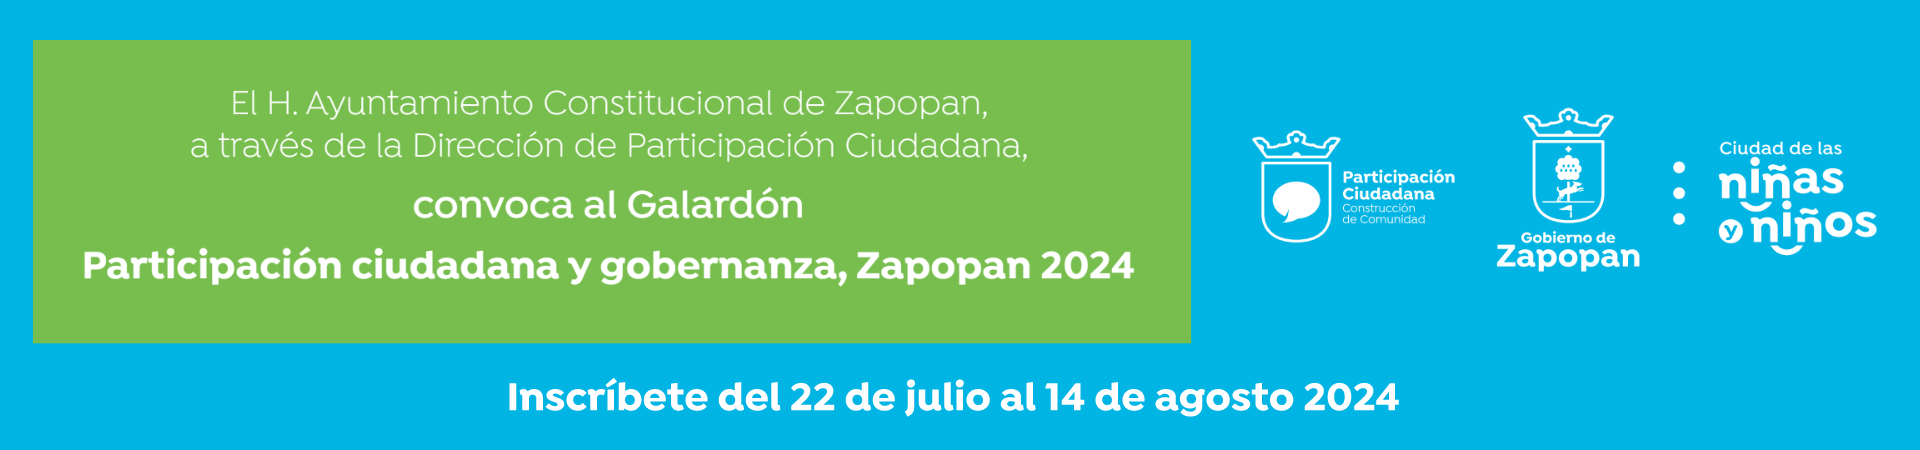  Galardón de Participación Ciudadana Zapopan 2024 